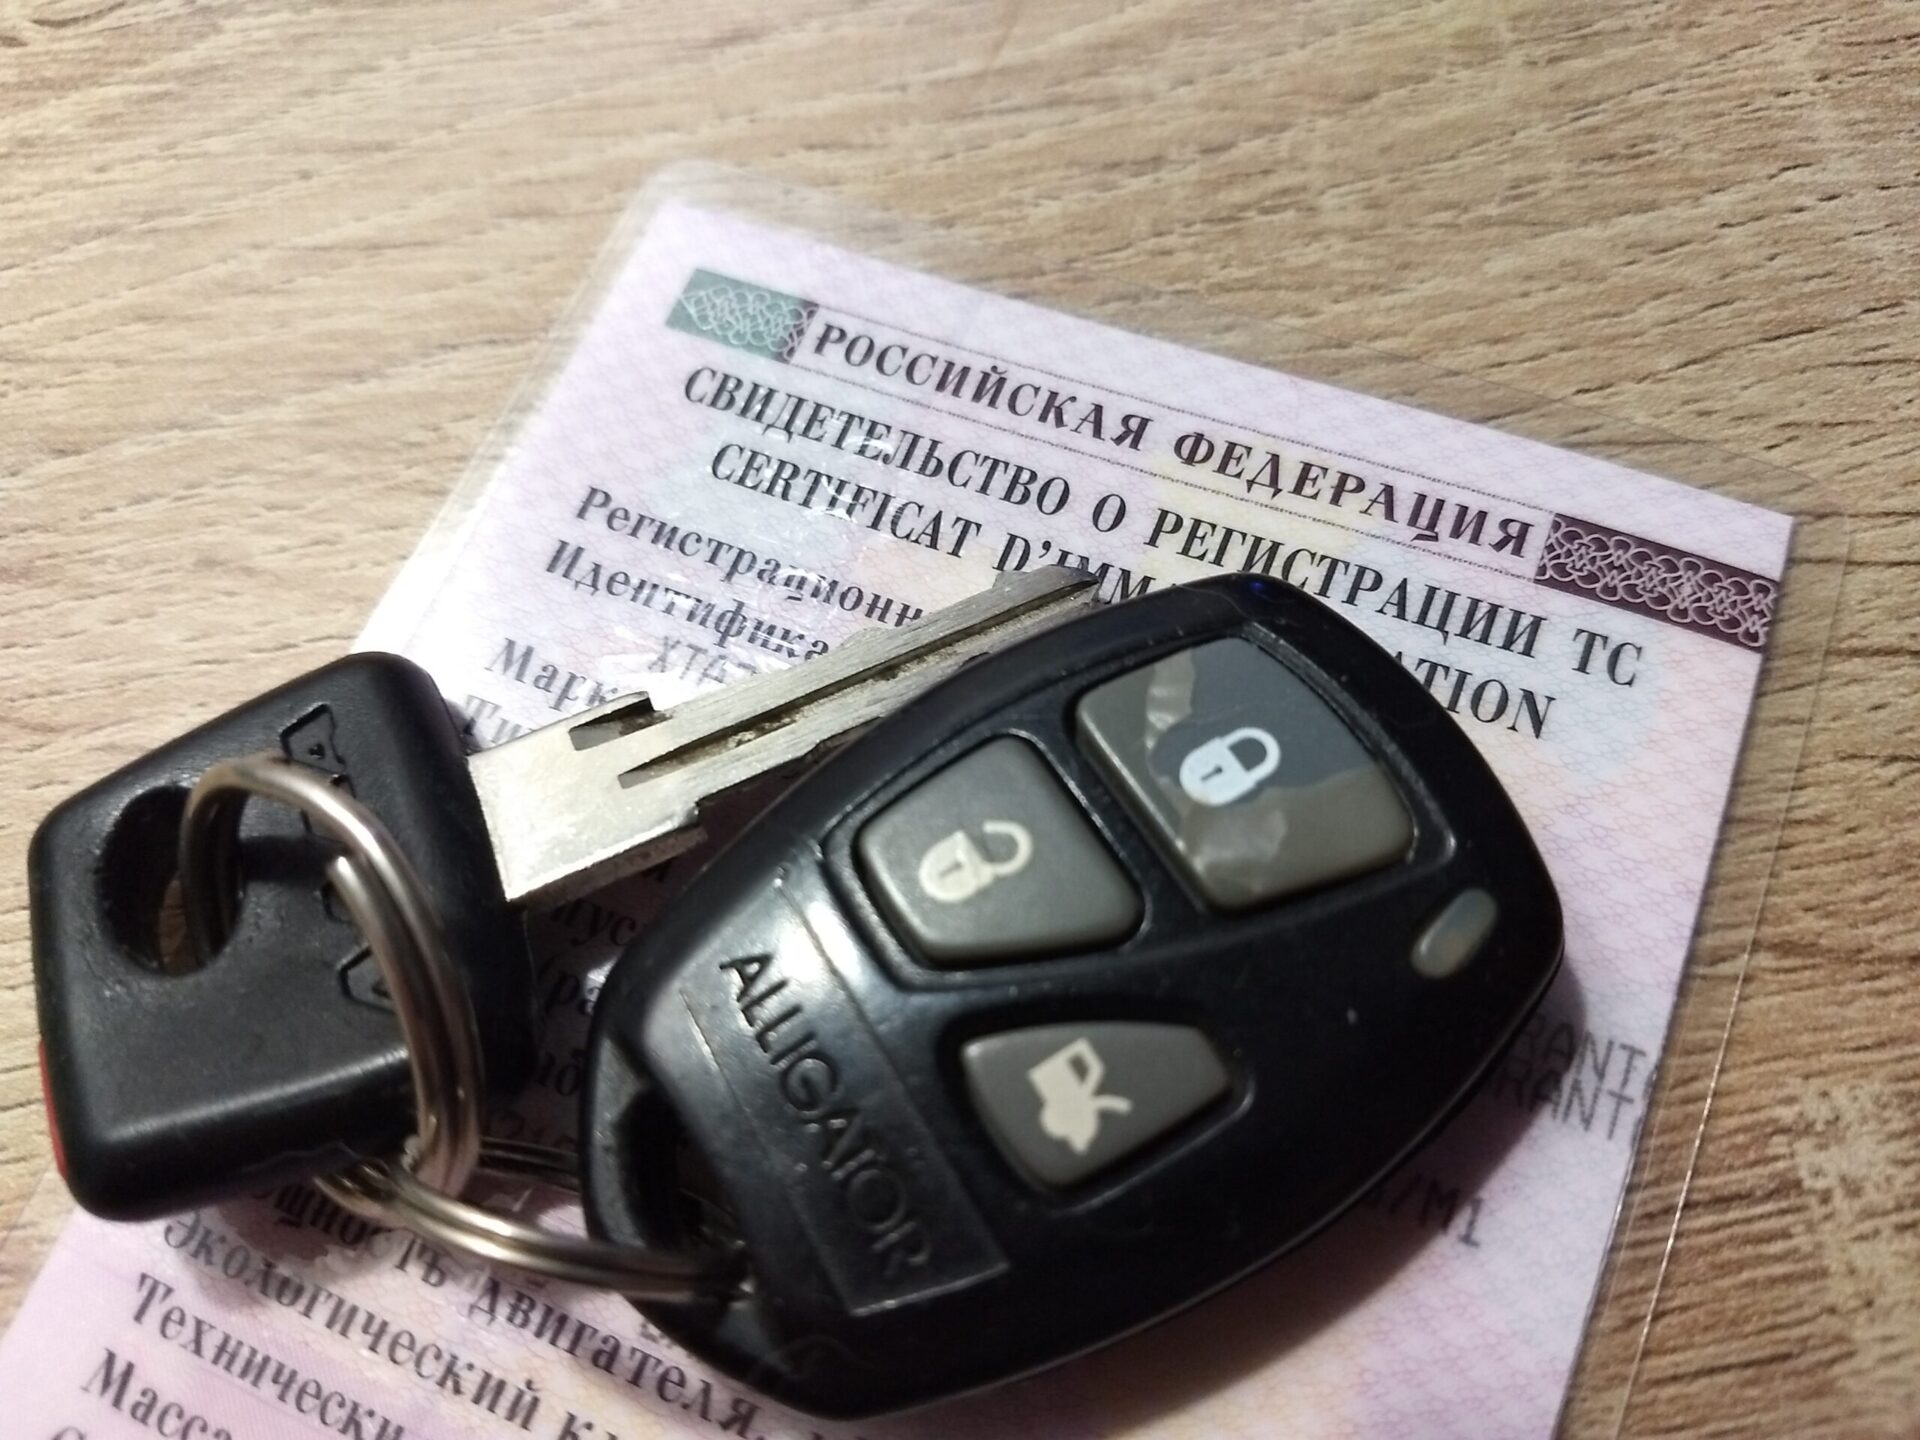 Граждане в РФ перестанут покупать автомобили при средней цене около 2 млн рублей